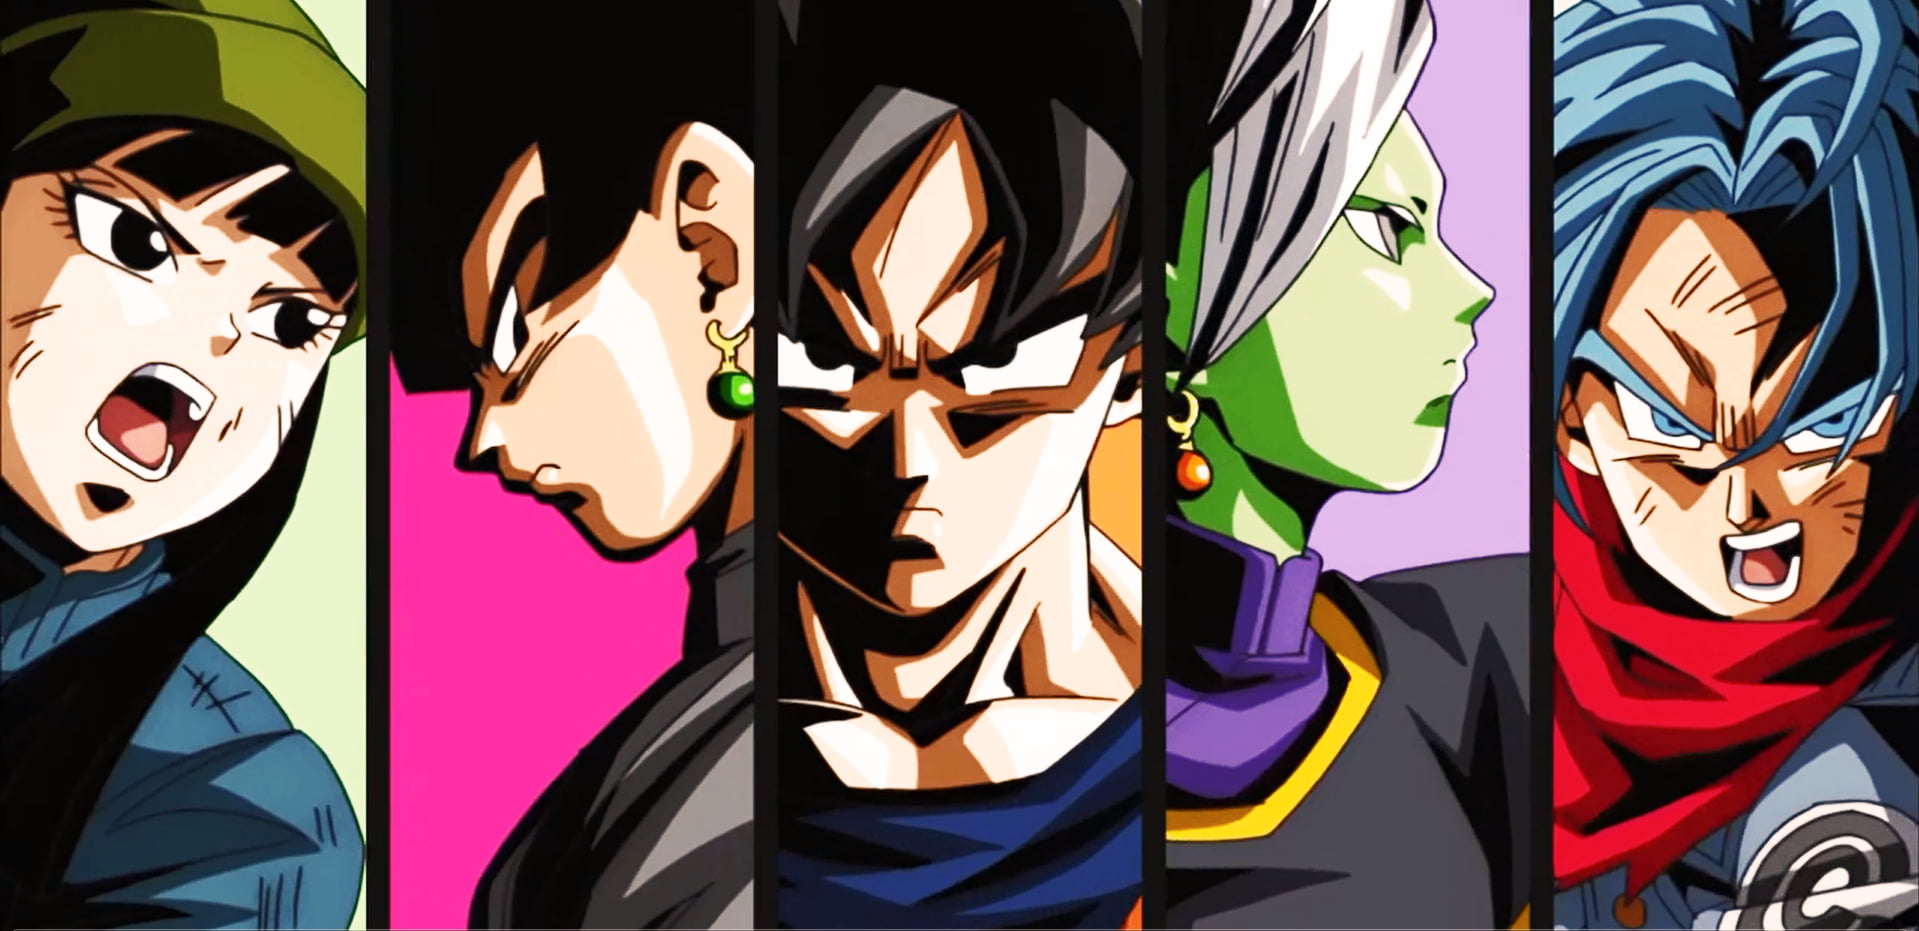 Dragon Ball Super wallpaper, Dragon Ball Super, trunks, Zamasu, Son Goku